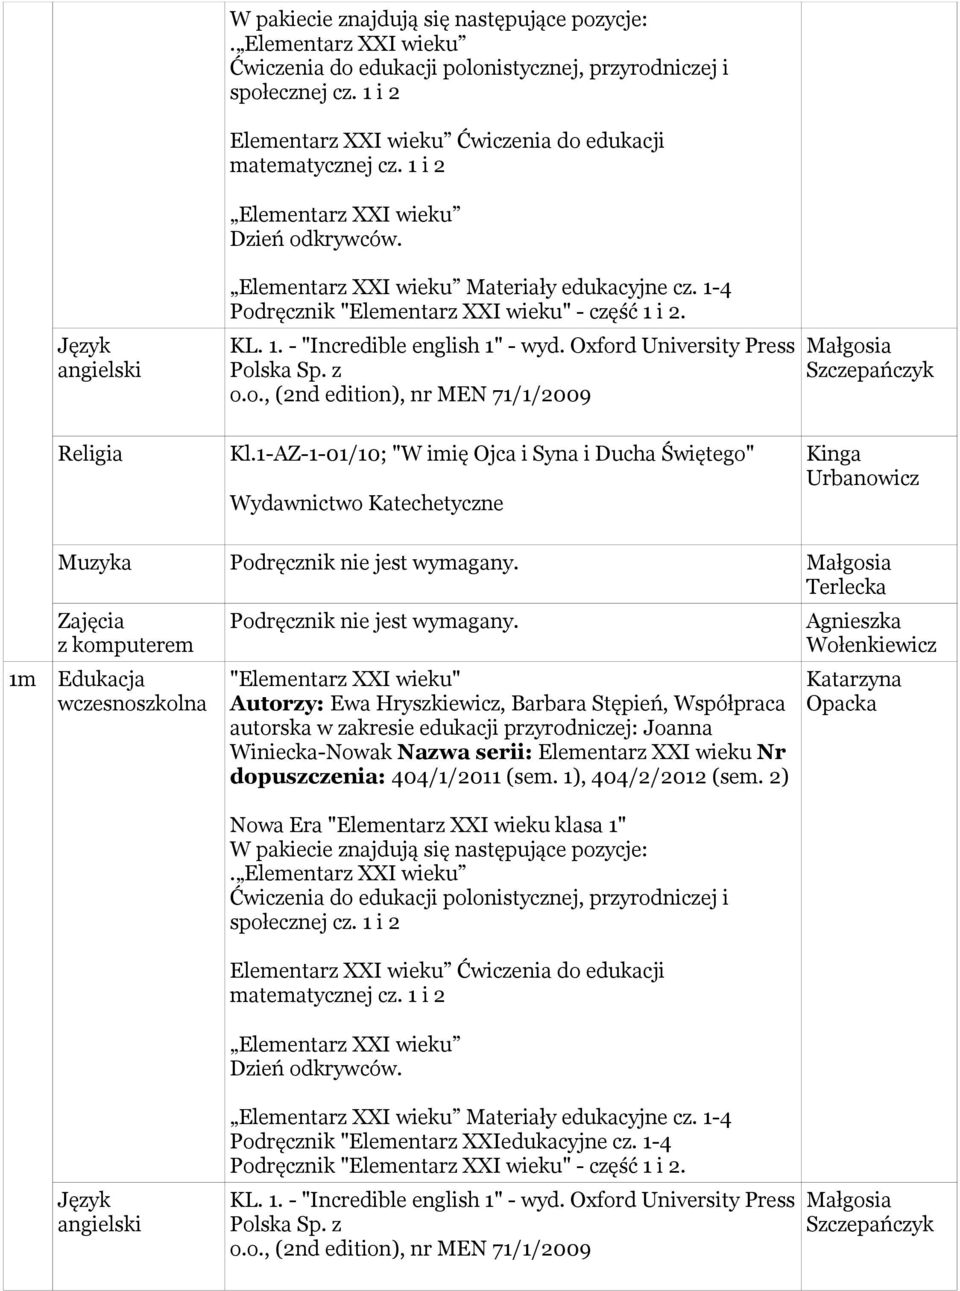 1-4 Podręcznik "Elementarz XXI wieku" - część 1 i 2. KL. 1. - "Incredible english 1" - wyd. Oxford University Press Polska Sp. z o.o., (2nd edition), nr MEN 71/1/2009 Małgosia Szczepańczyk Kl.